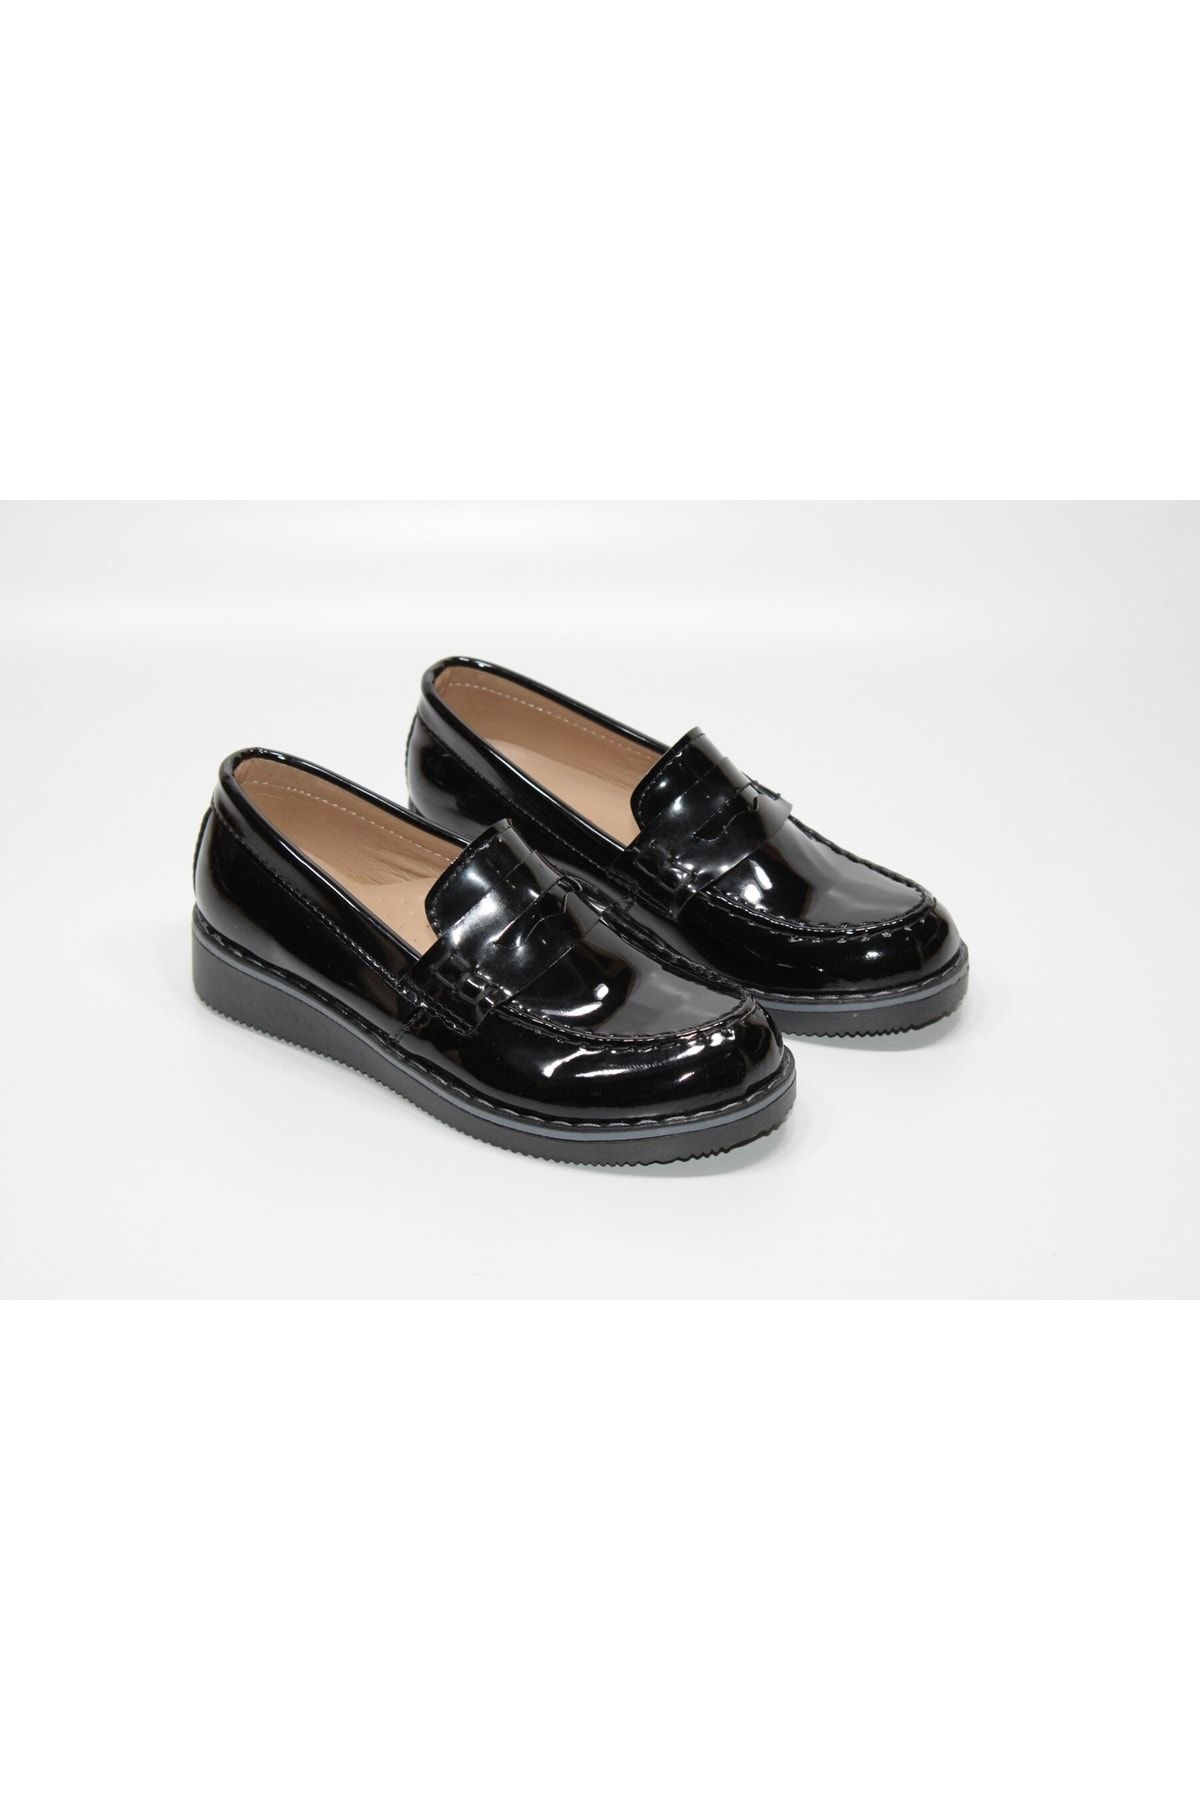 Minican Ortopedik Taban Erkek Çocuğu Sünnetlik Balo Düğün Bağsız Klasik Siyah Rugan Ayakkabı